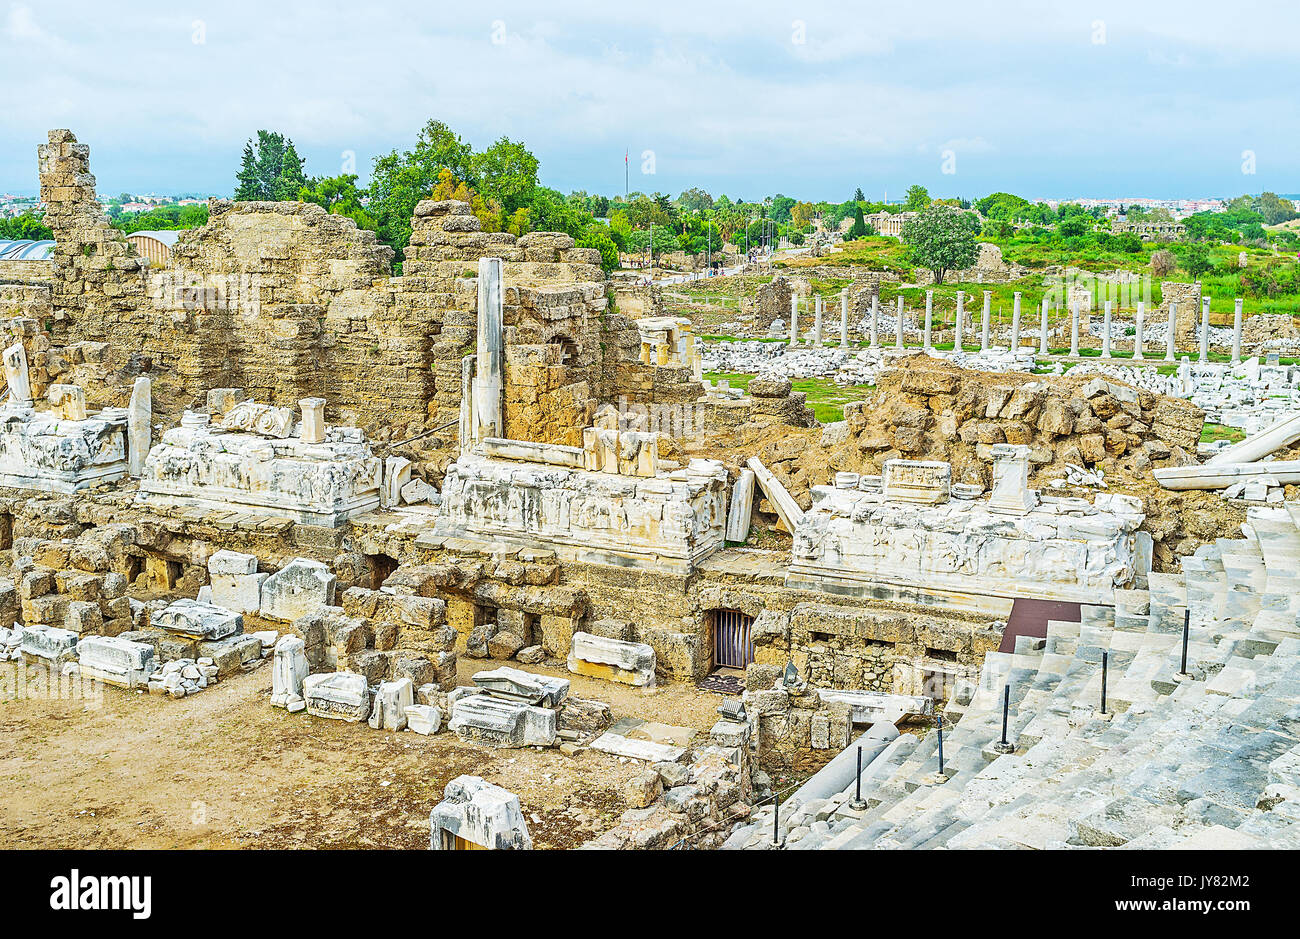 Le côté moderne resort est situé sur le site de l'ancienne ville grecque, voici donc un grand nombre de sites archéologiques préservés, la Turquie. Banque D'Images